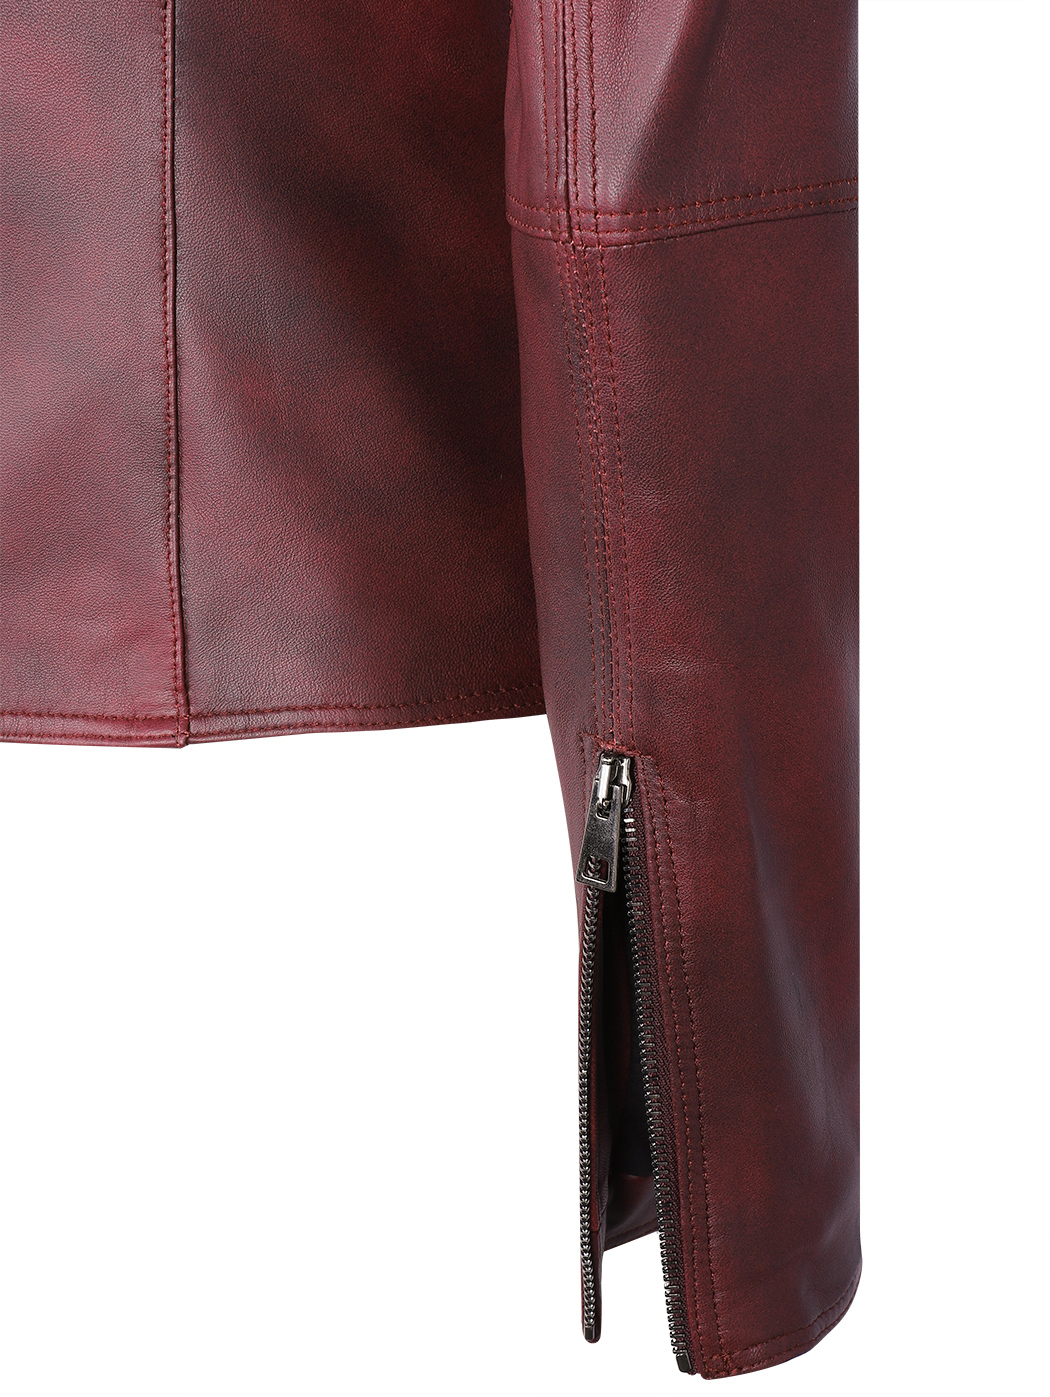 Кожаная куртка косуха коричневая красный